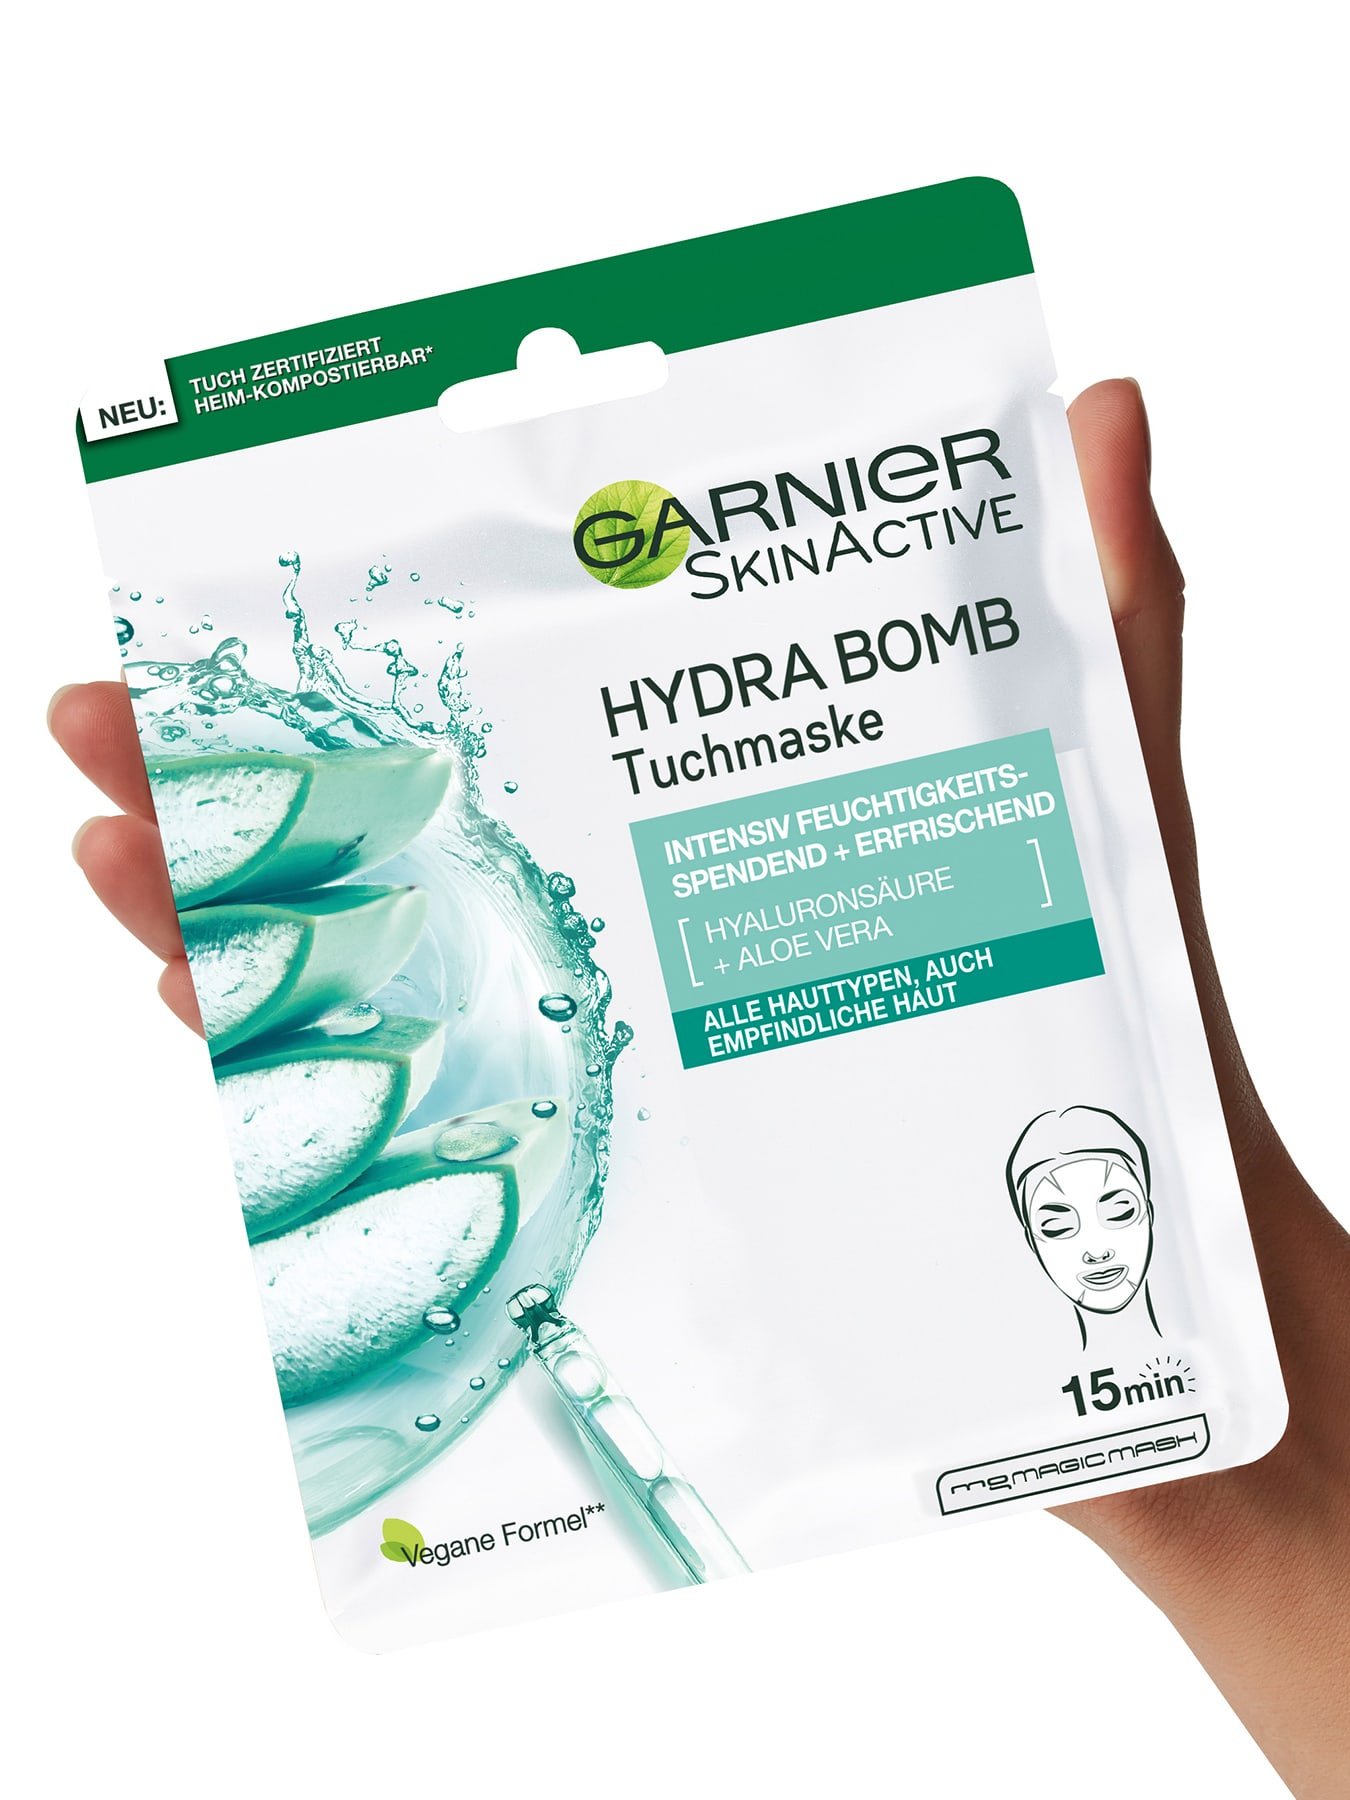 Eine Hand haelt die Verpackung der Garnier Hydra Bomb Tuchmaske